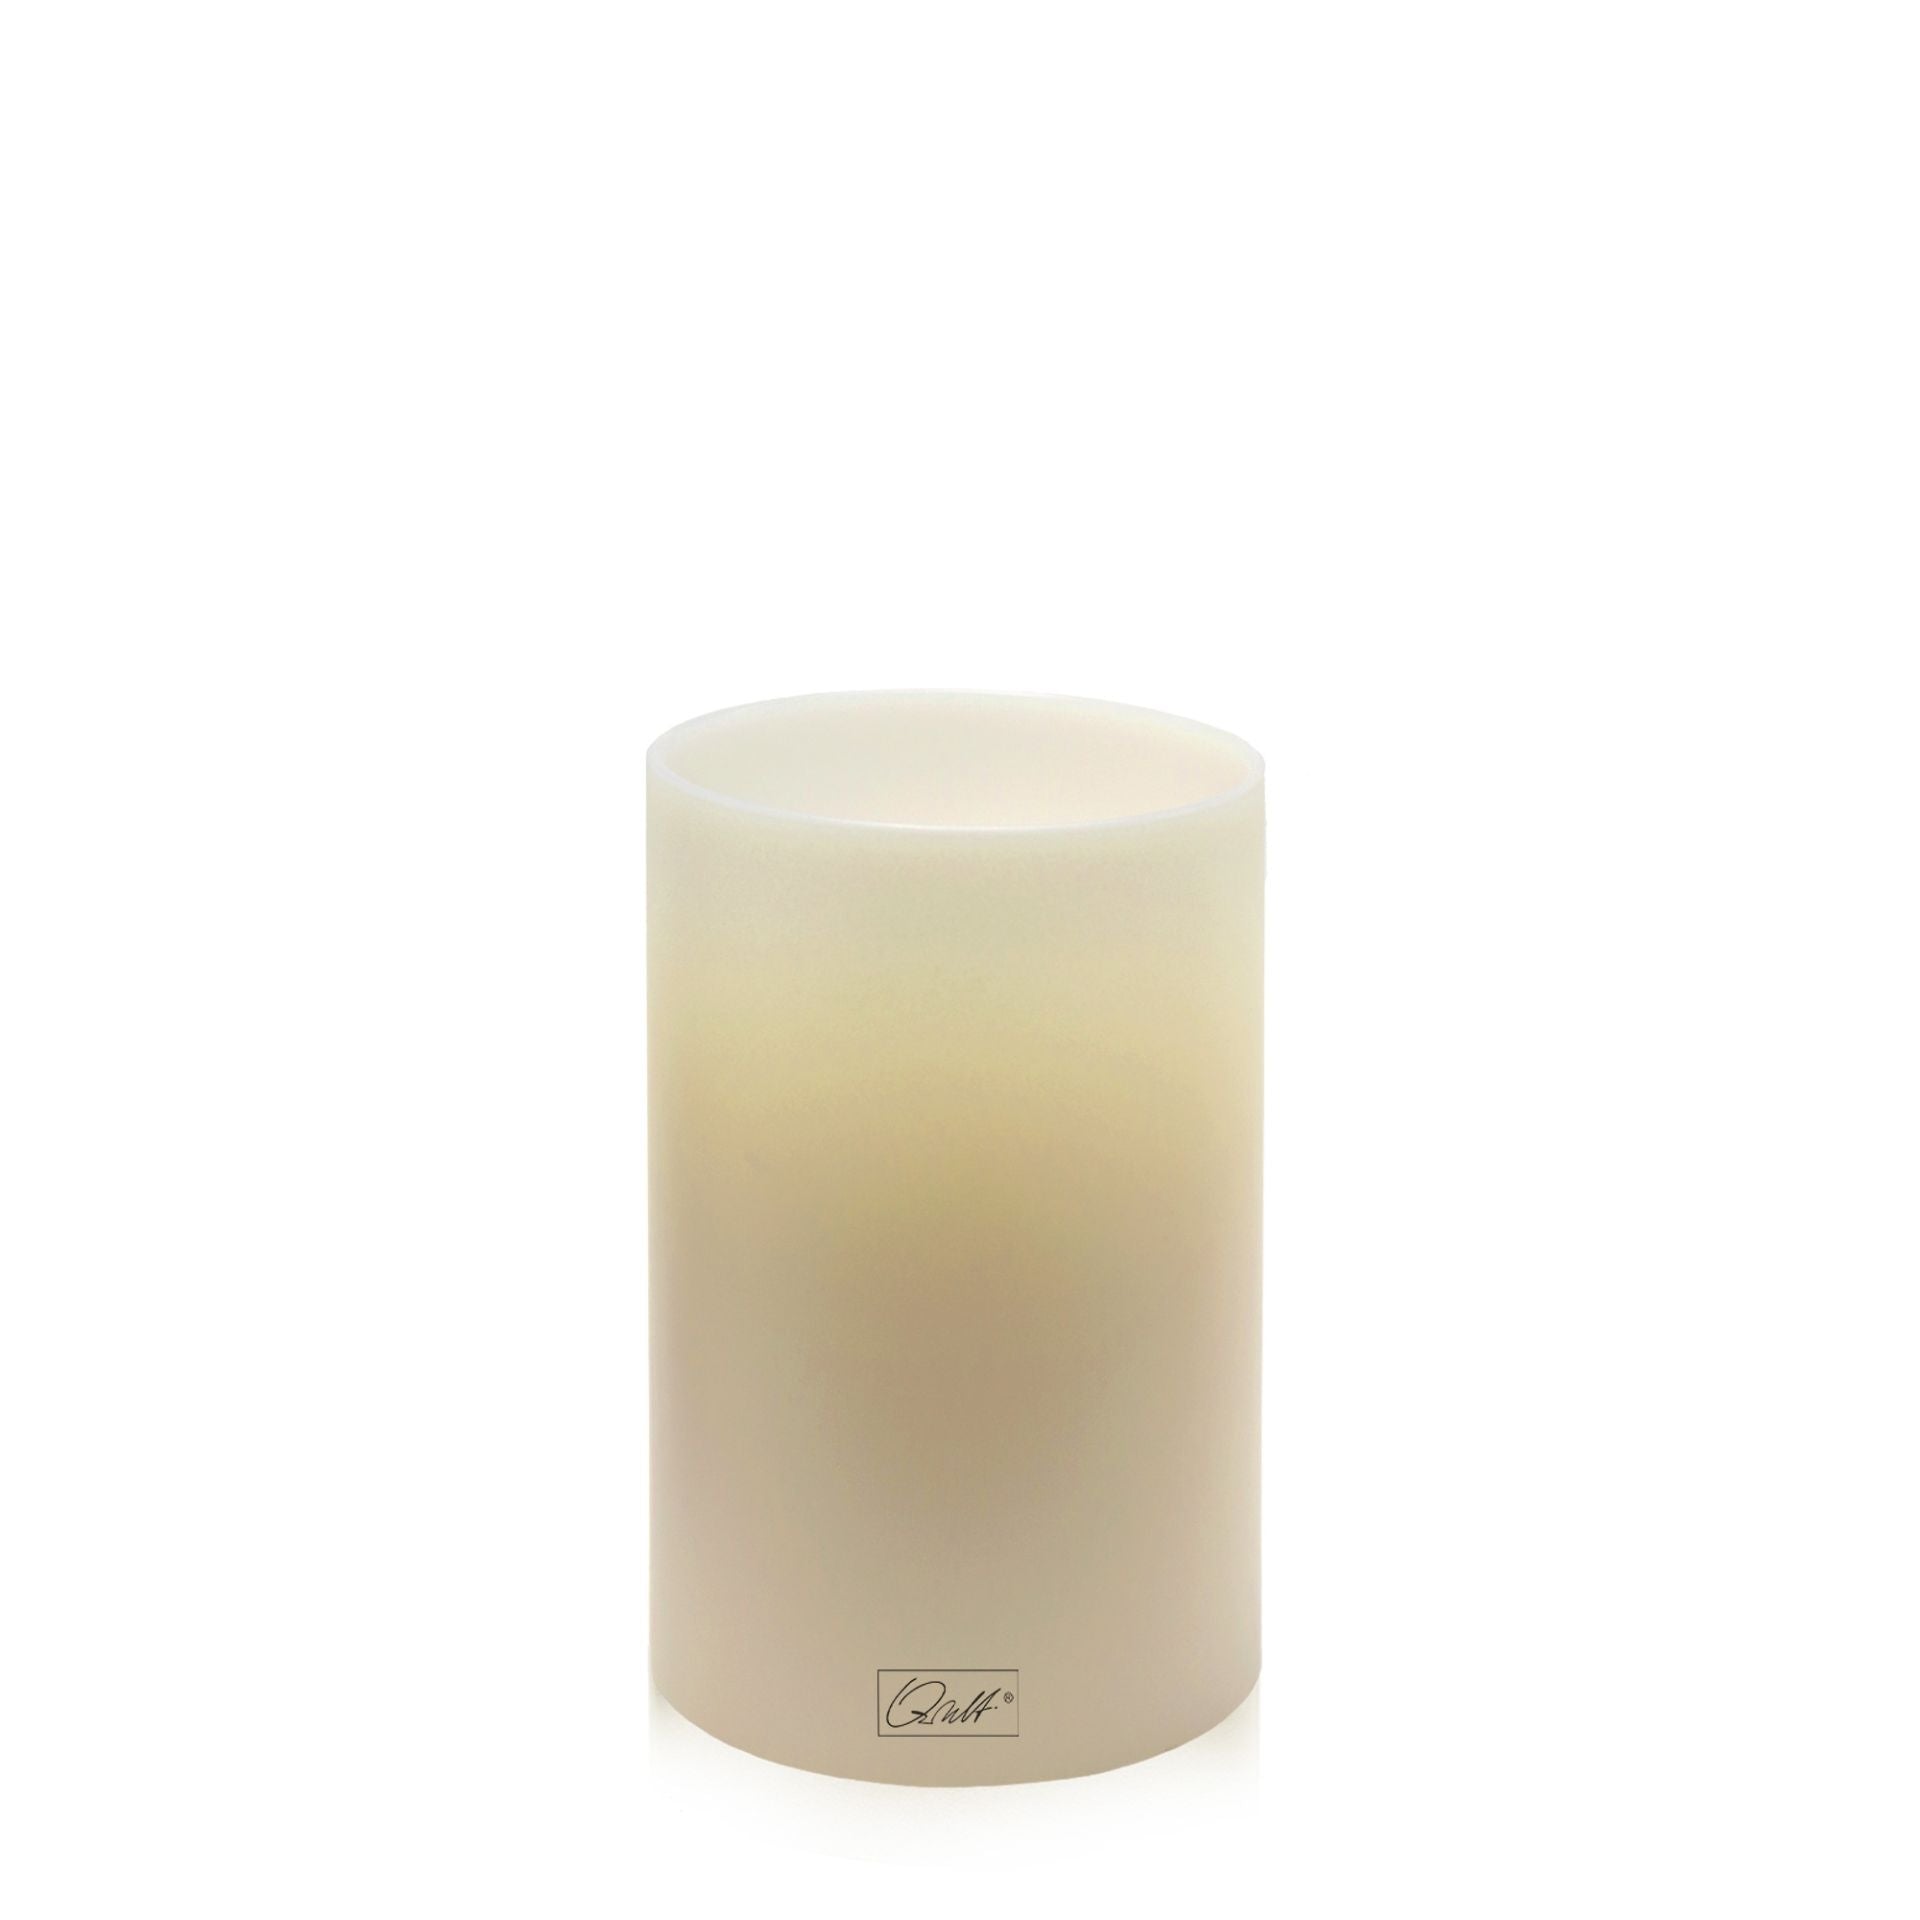 Qult Inside tea light holder in candle shape Color Ø 8 cm